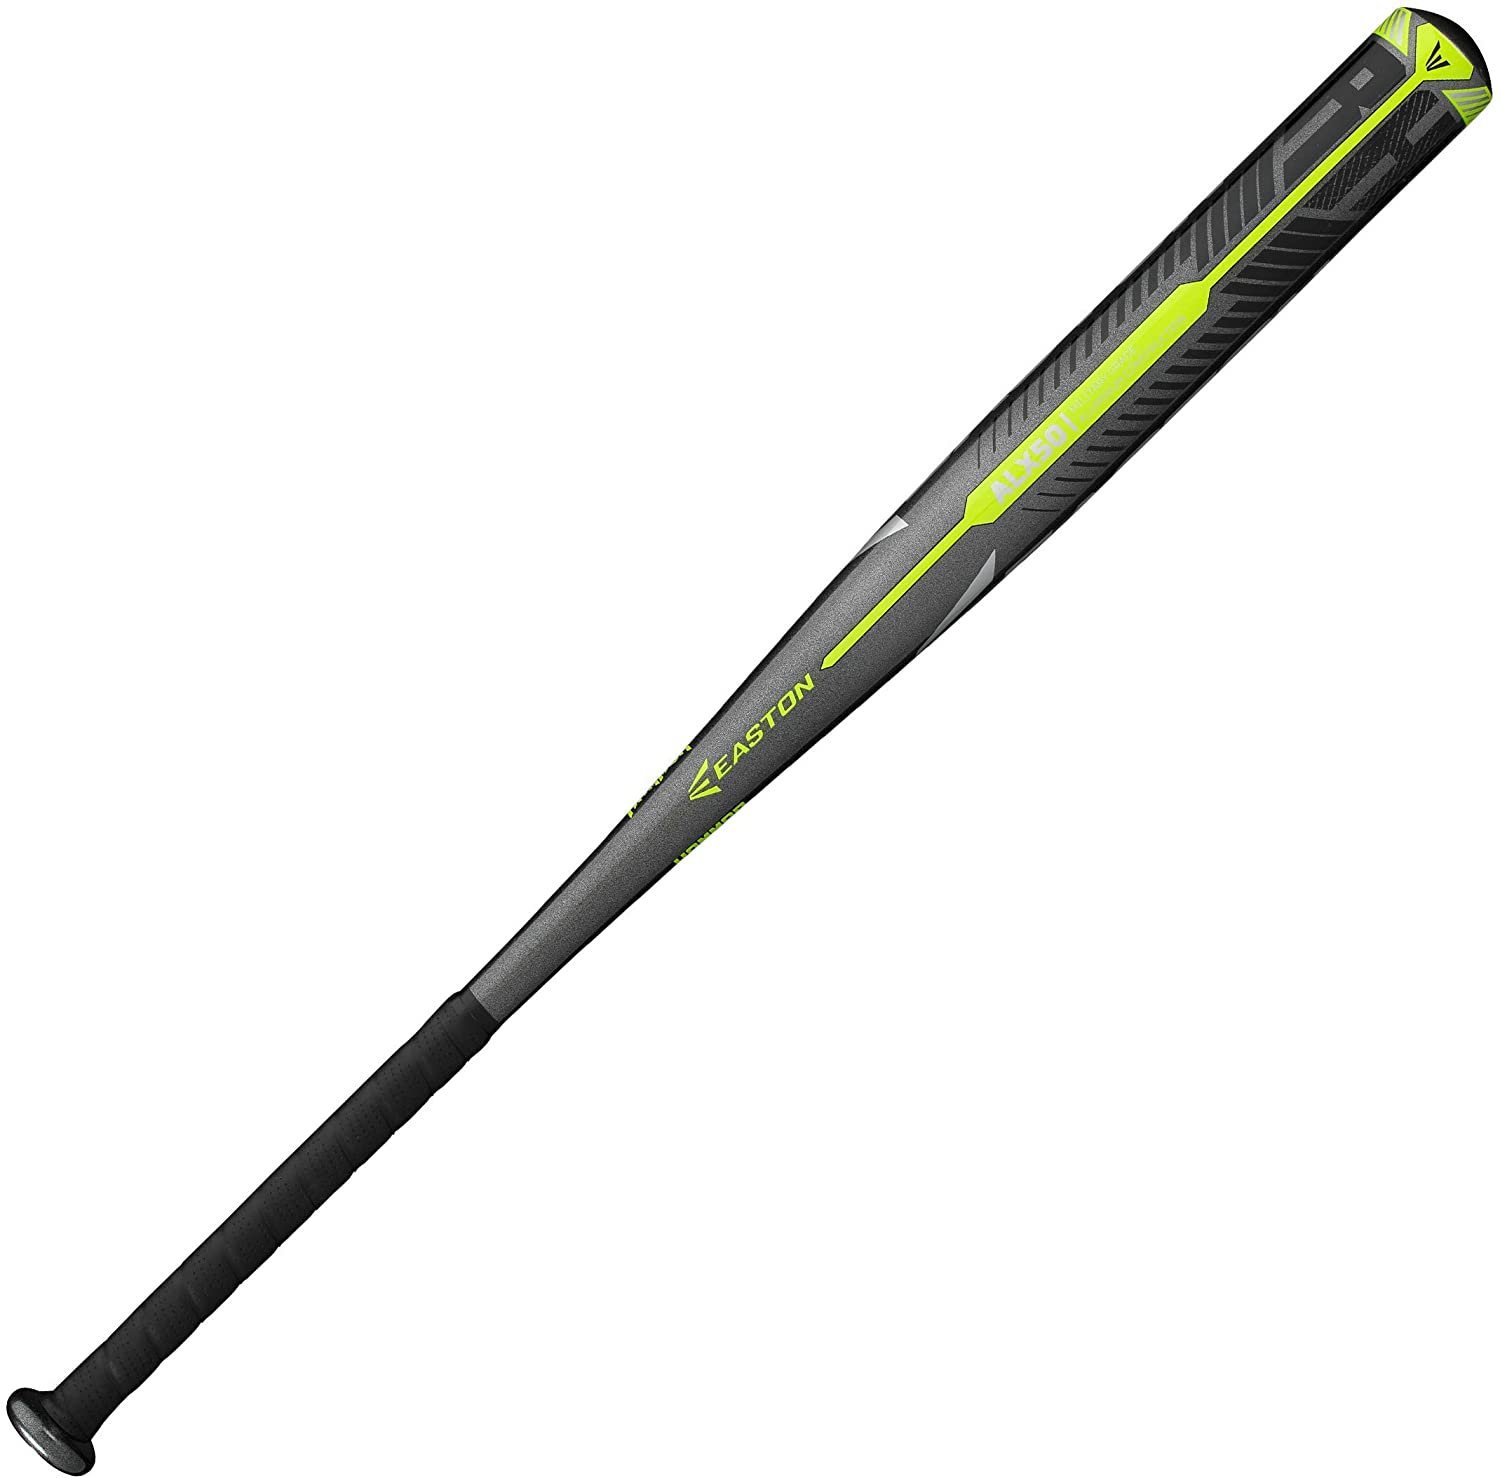 1. EASTON HAMMER Slowpitch Softball Bat